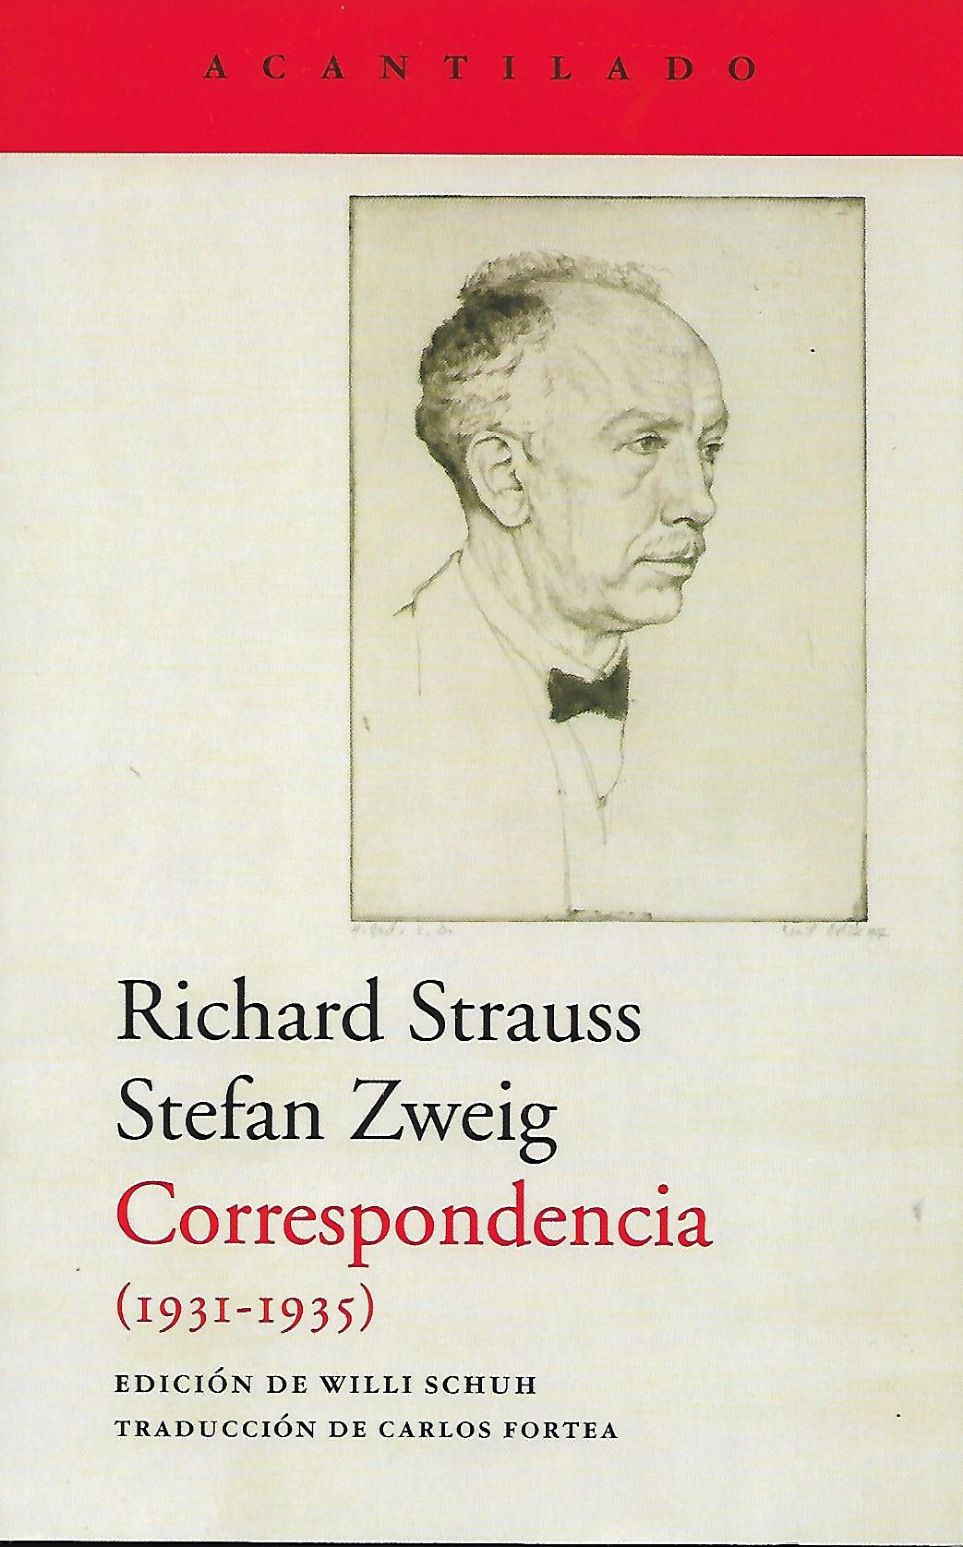 Richard Strauss, Stefan Zweig. Correspondencia